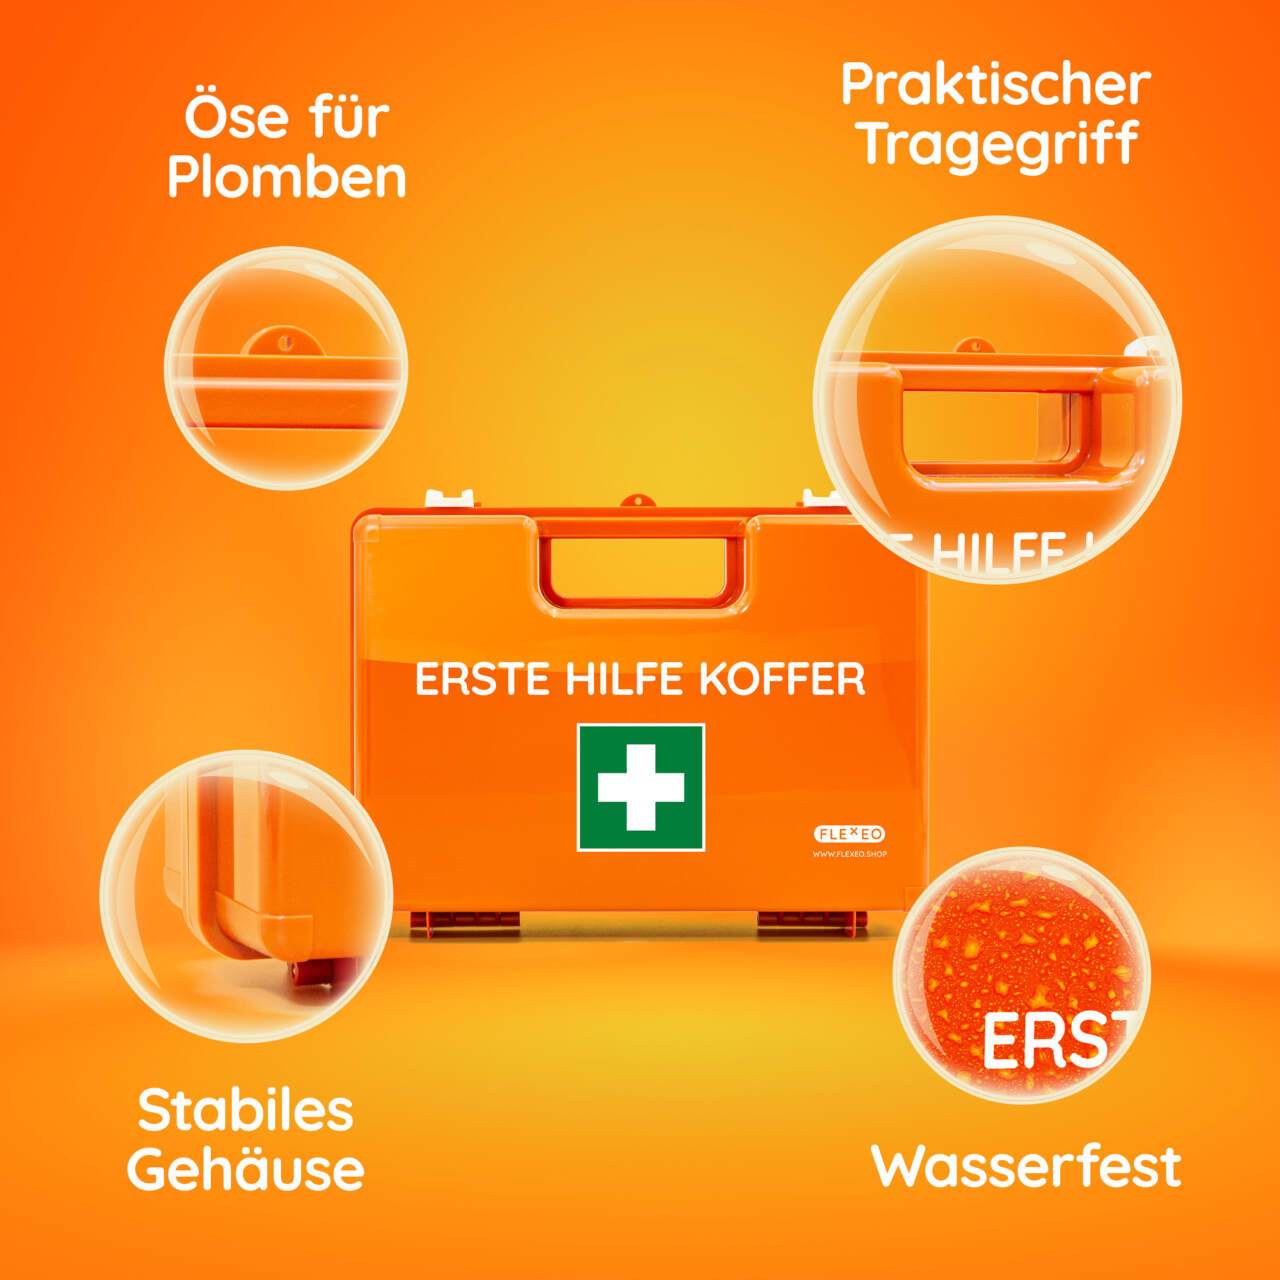 Erste Hilfe Koffer XL Multi, leer, orange, 58.90 Fr.